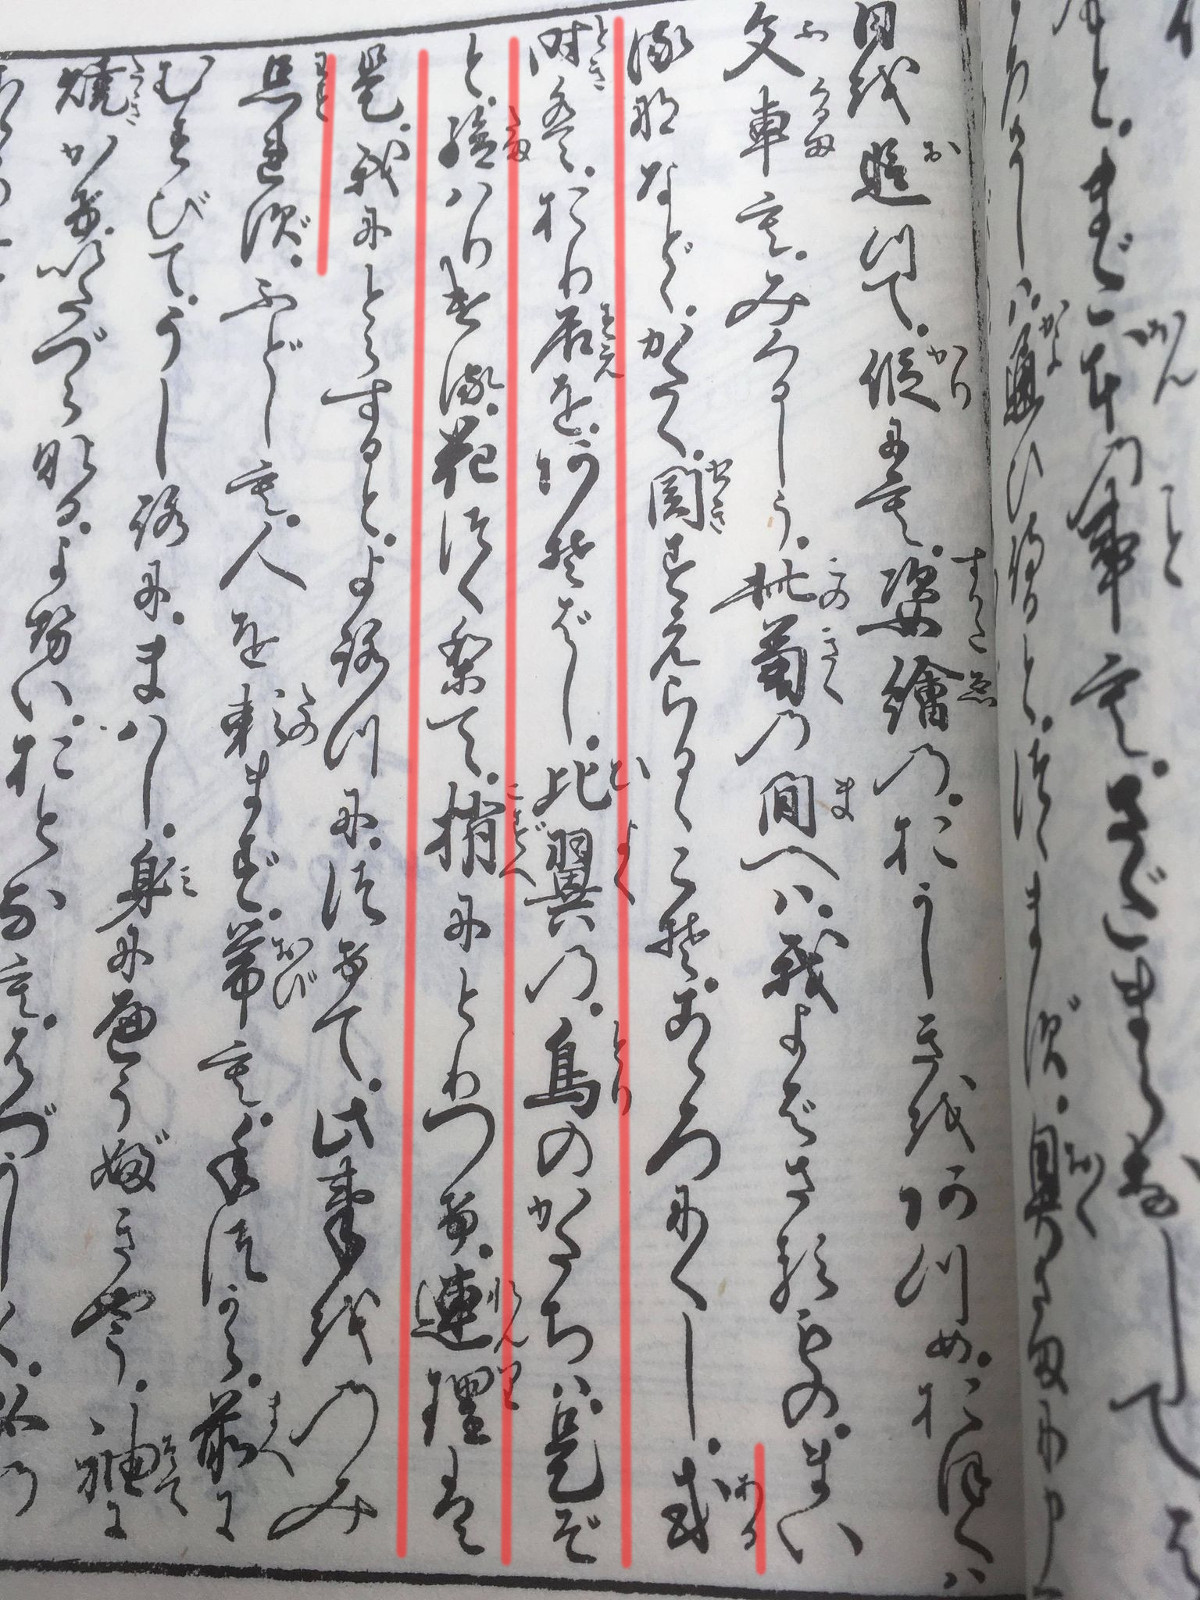 折り鶴の記録が残っている最古の本